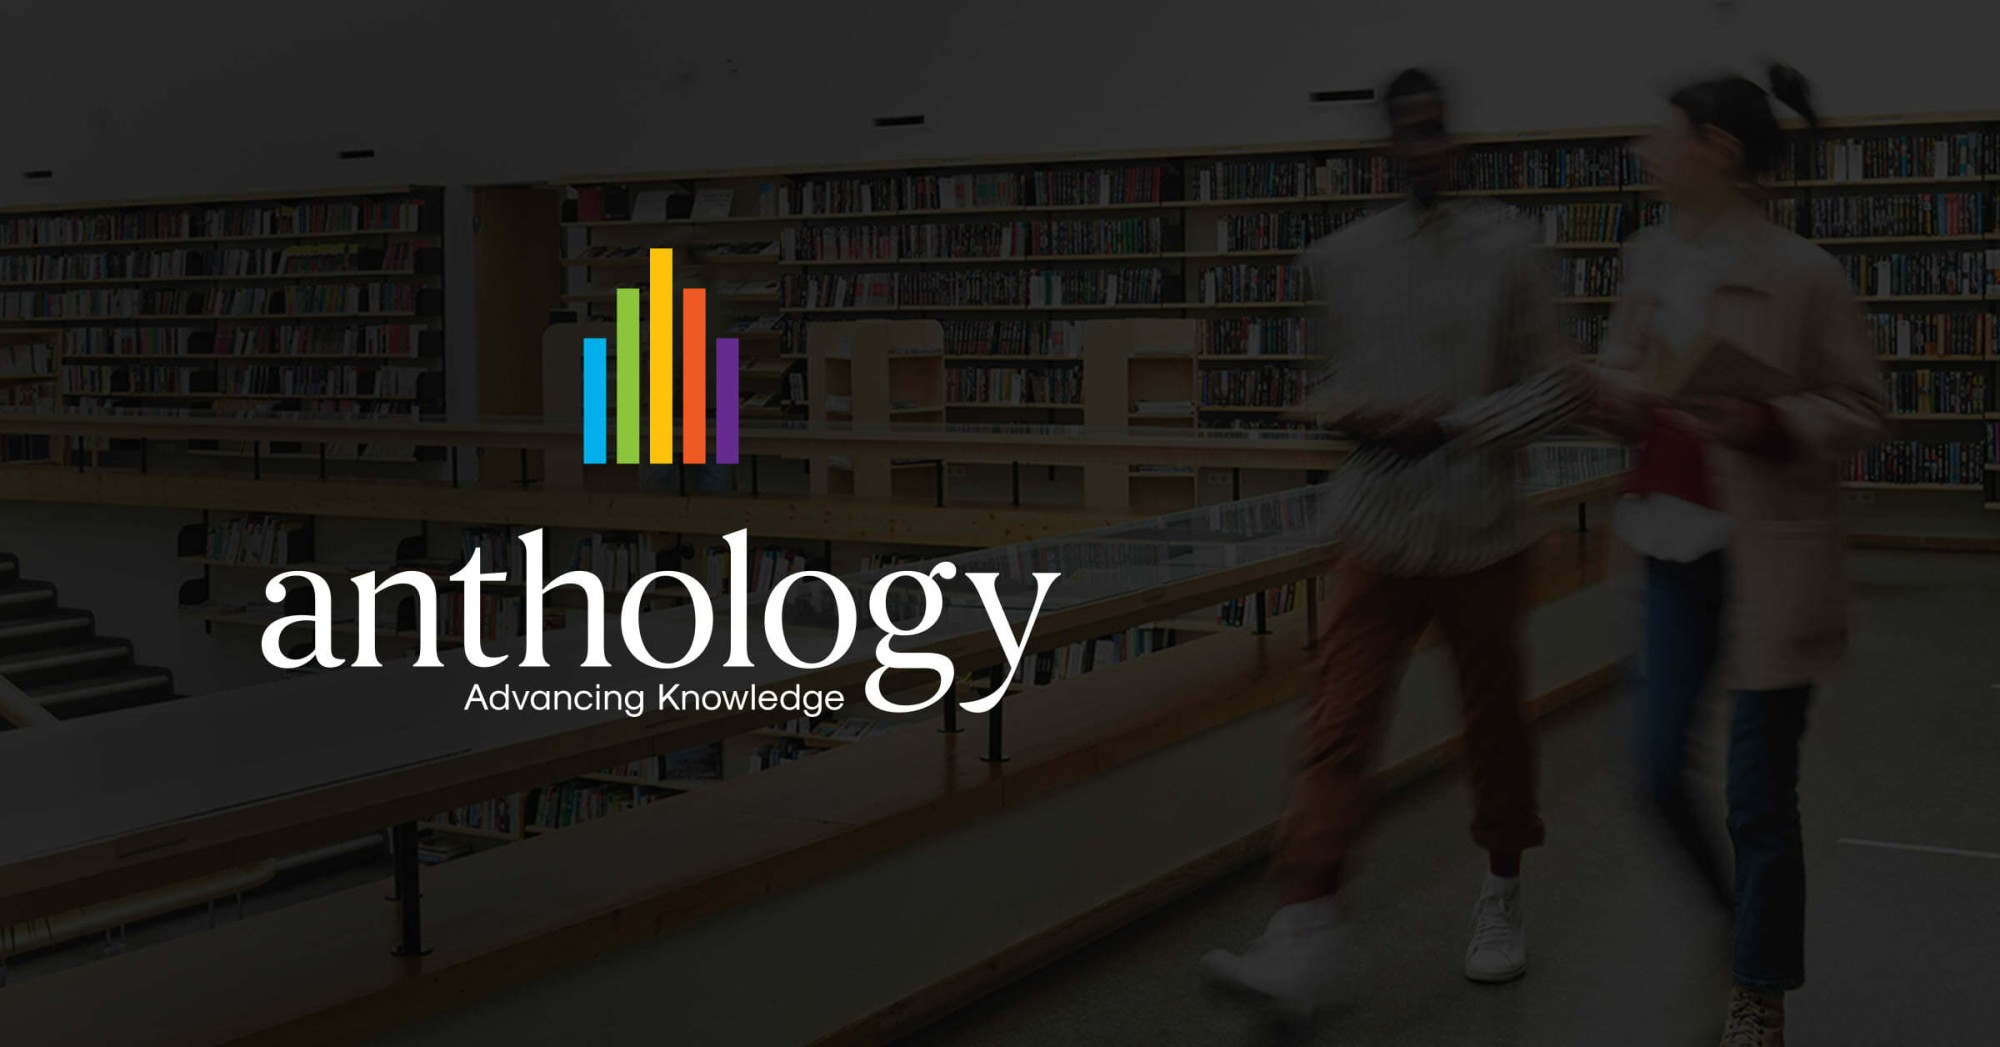 Anthology logo overlayed on a photo of students walking together